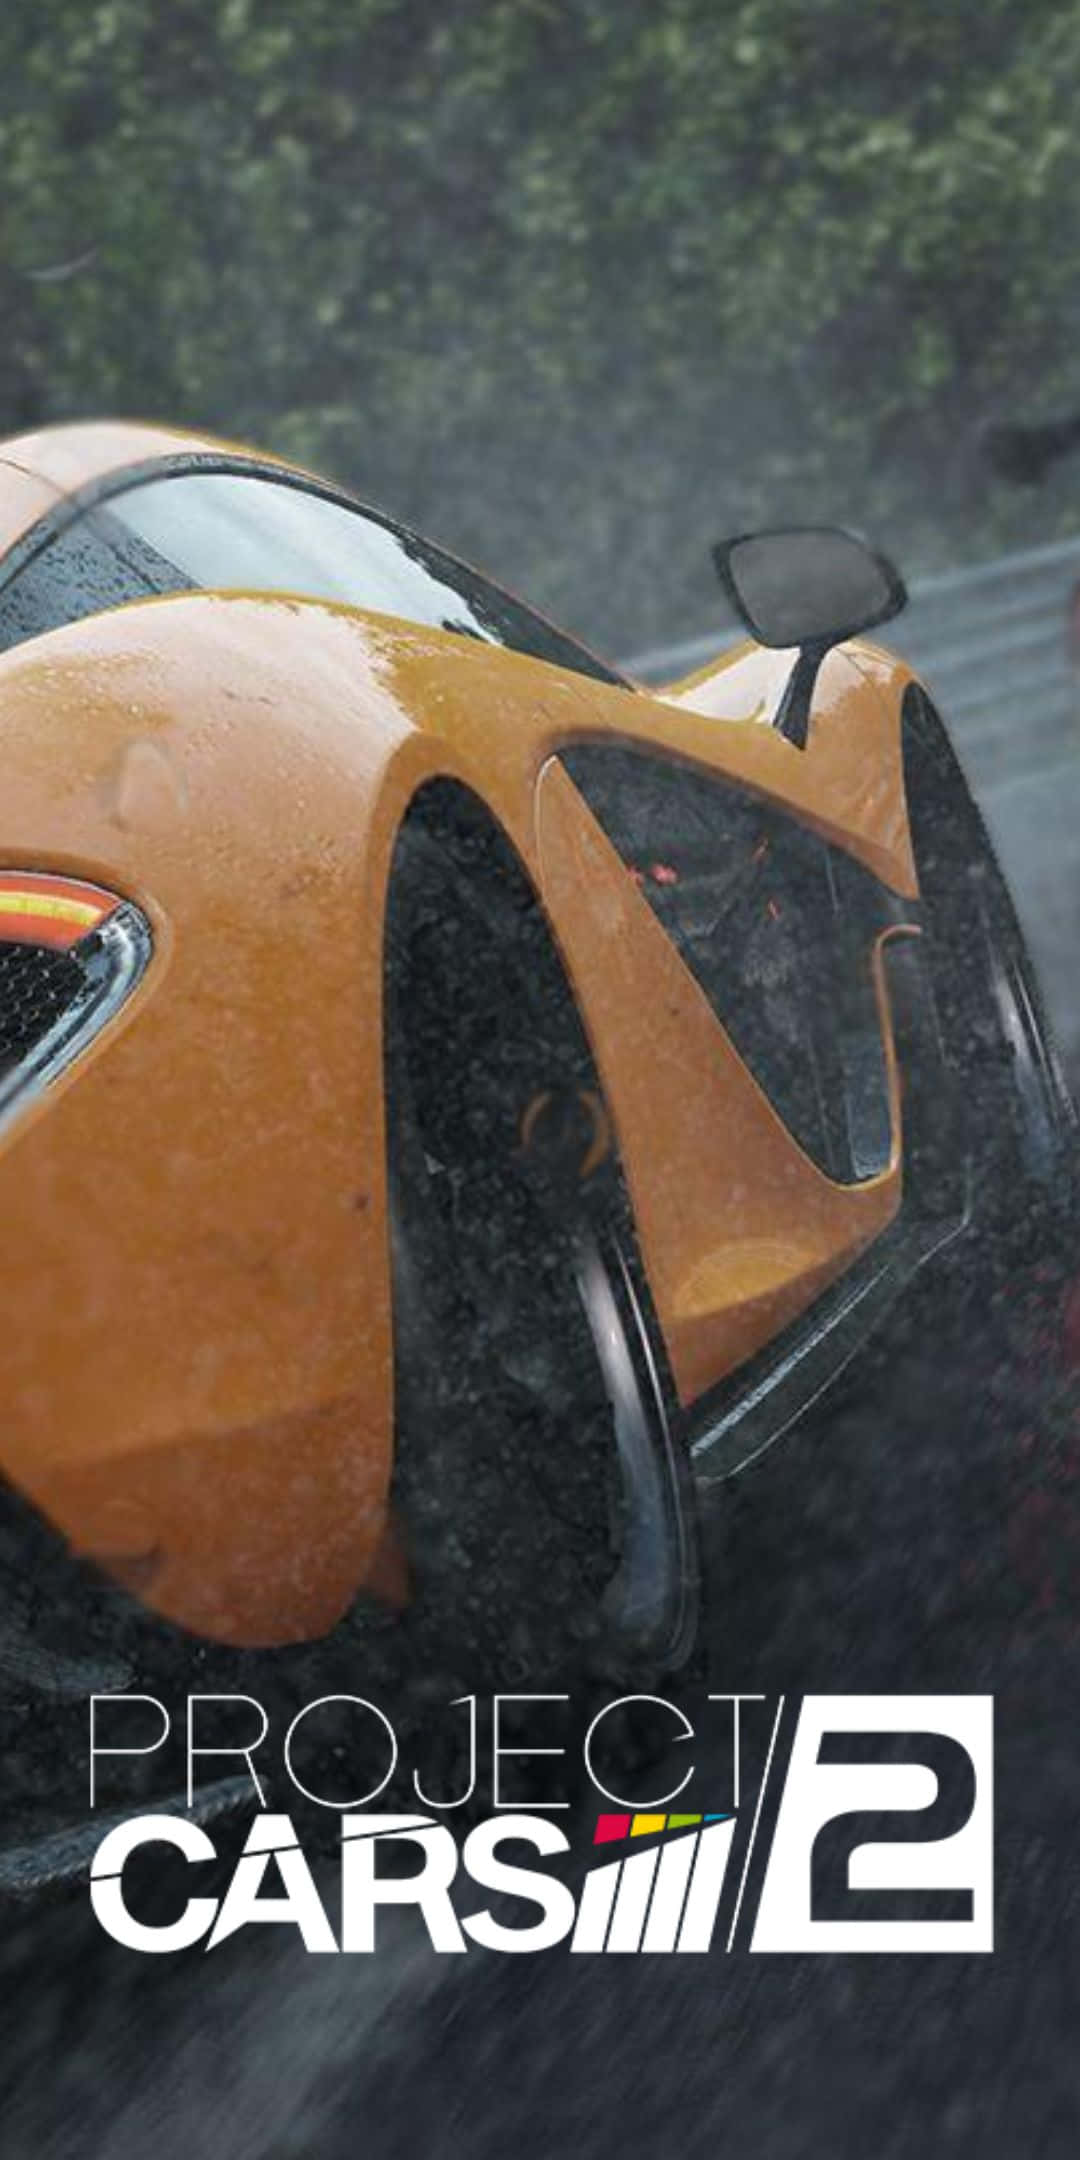 Sfondomclaren 570s Arancione 2016 Per Pixel 3 Project Cars 2